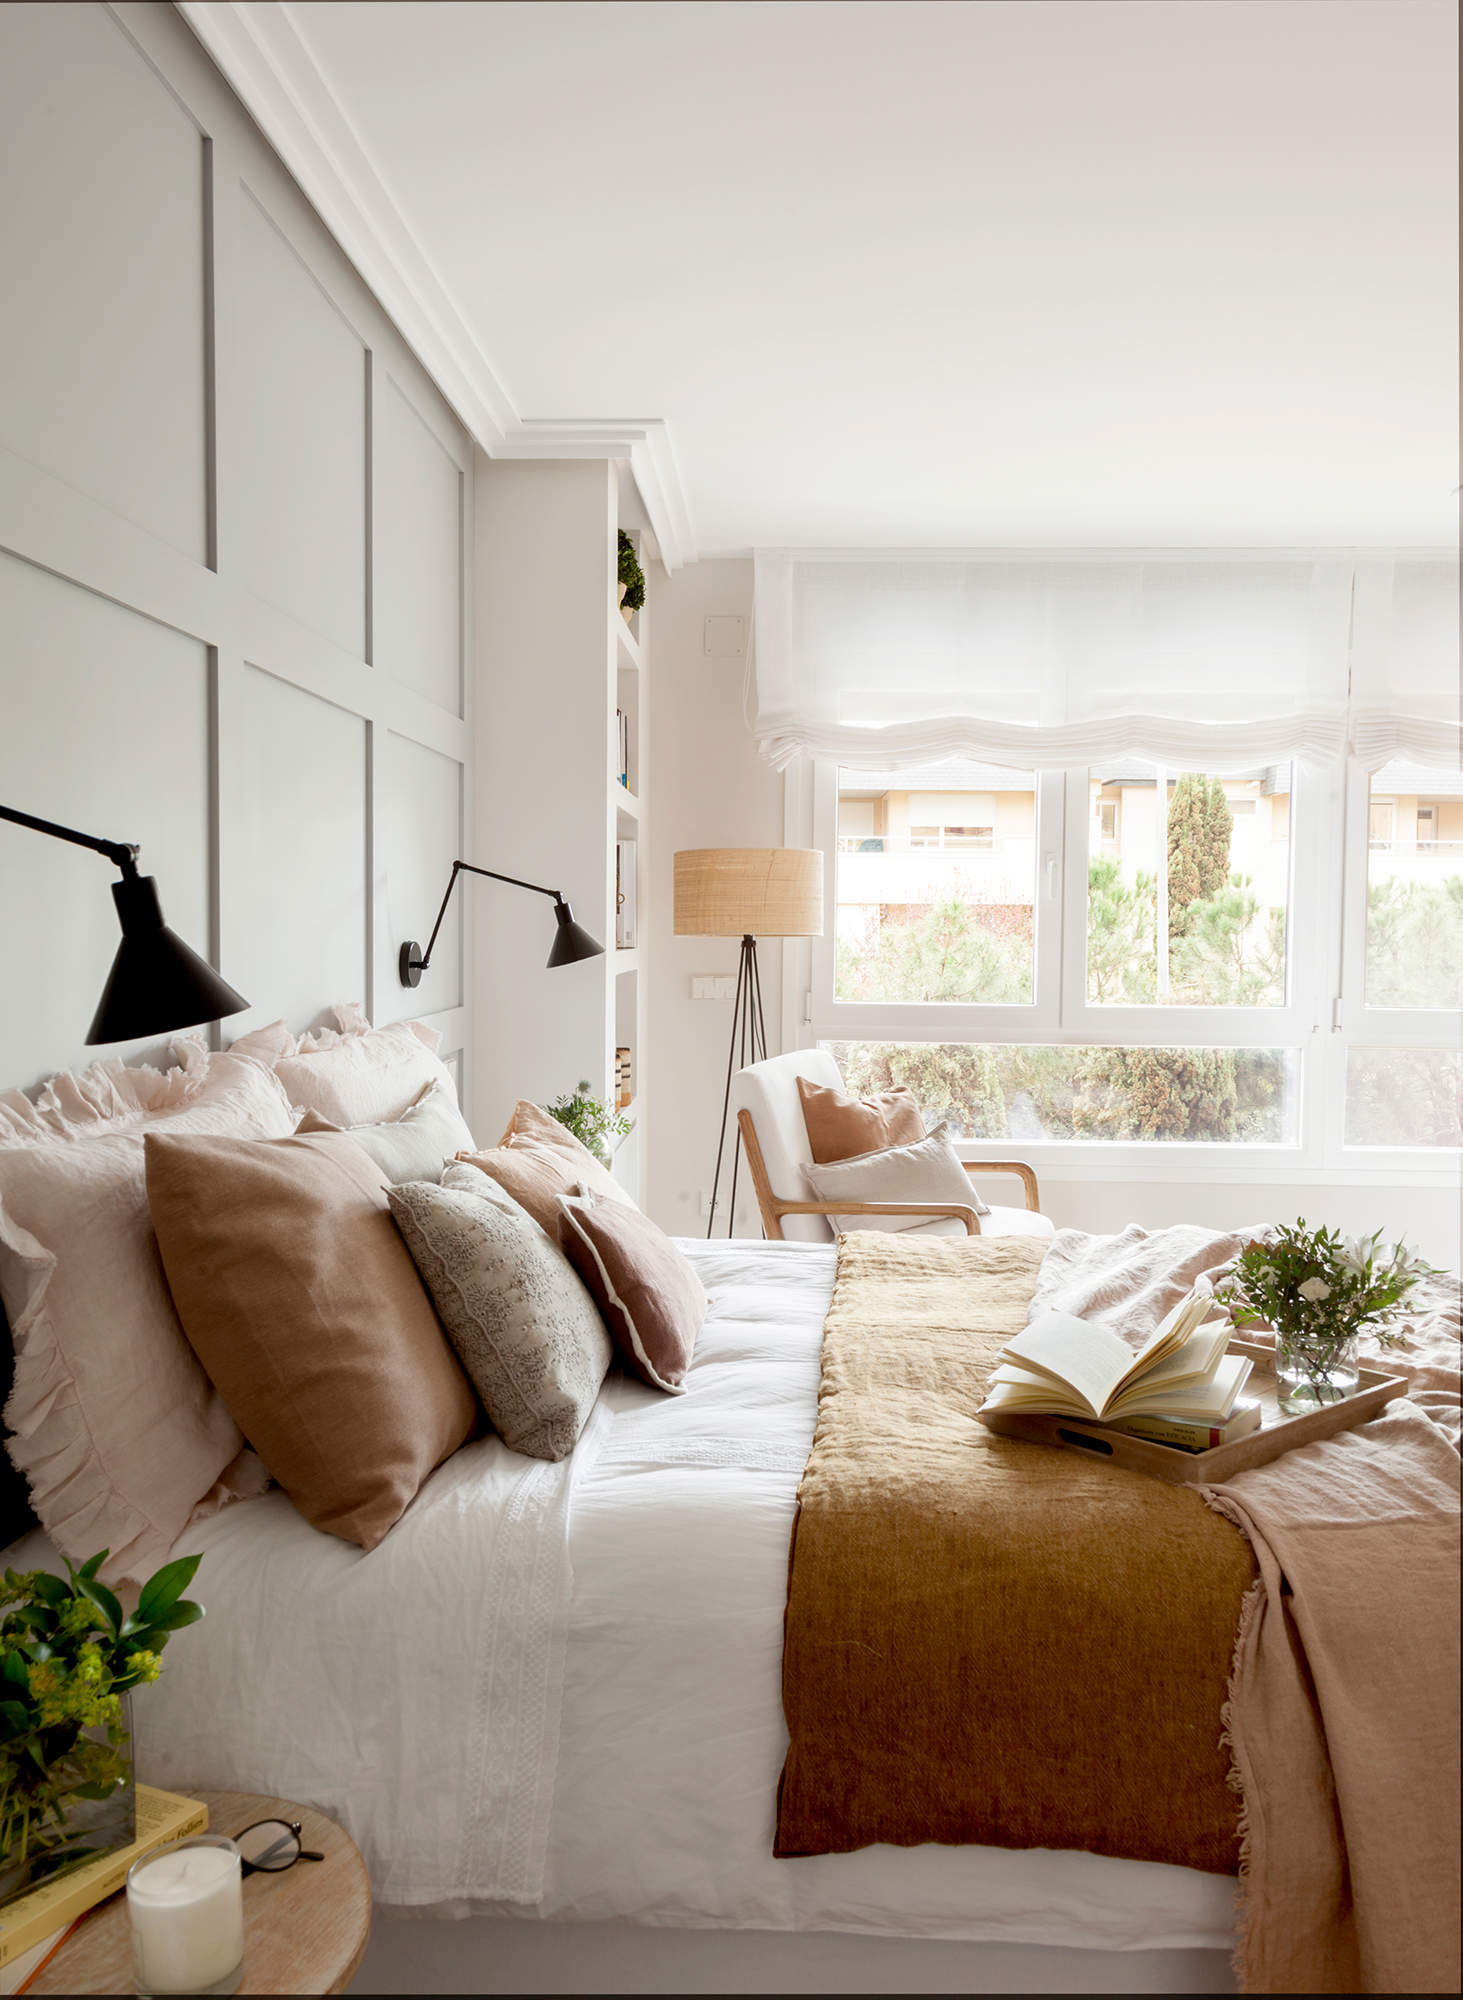 Dormitorio con pared decorada con molduras